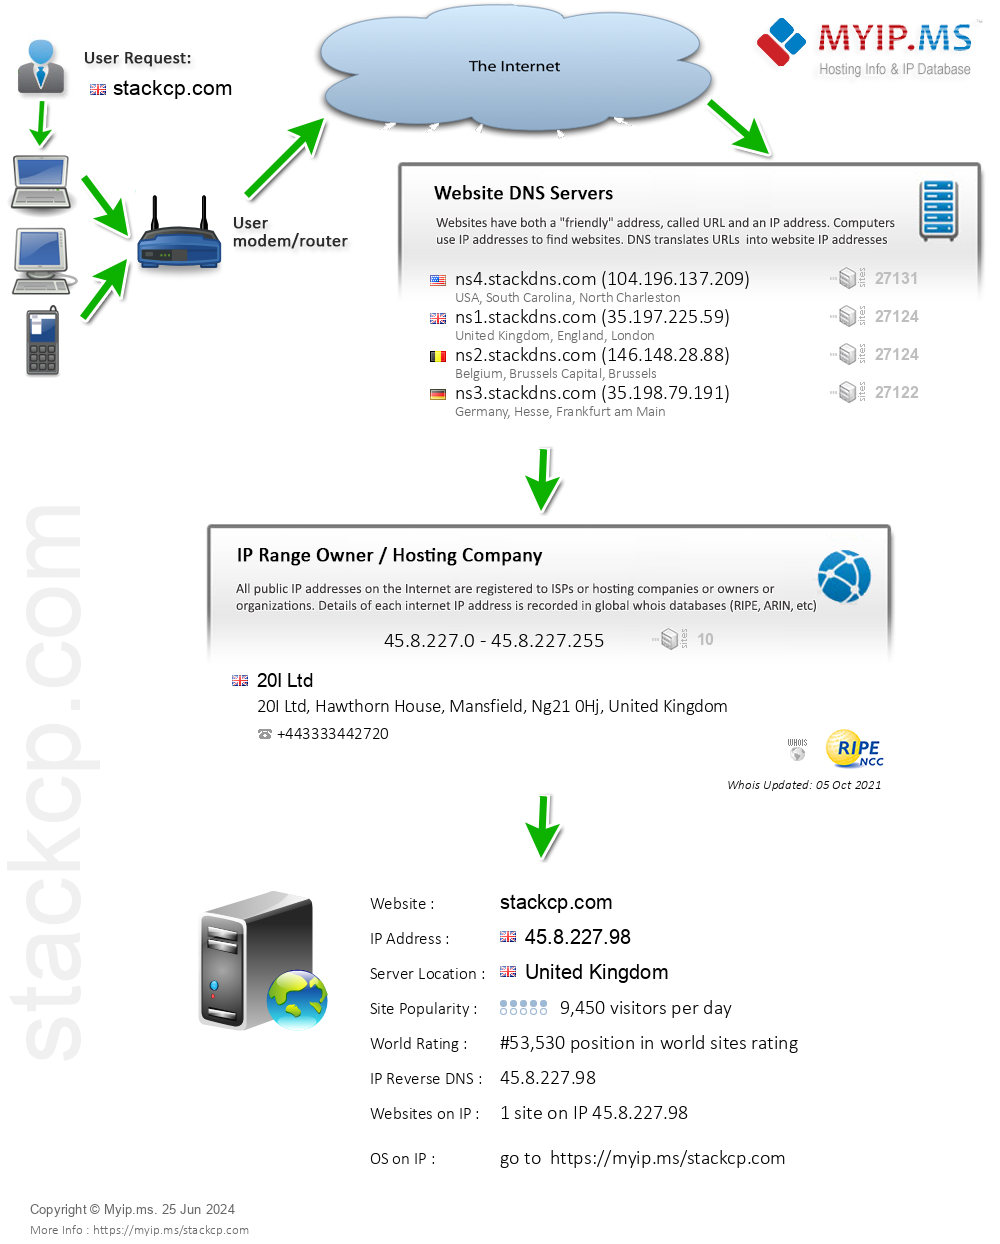 Stackcp.com - Website Hosting Visual IP Diagram